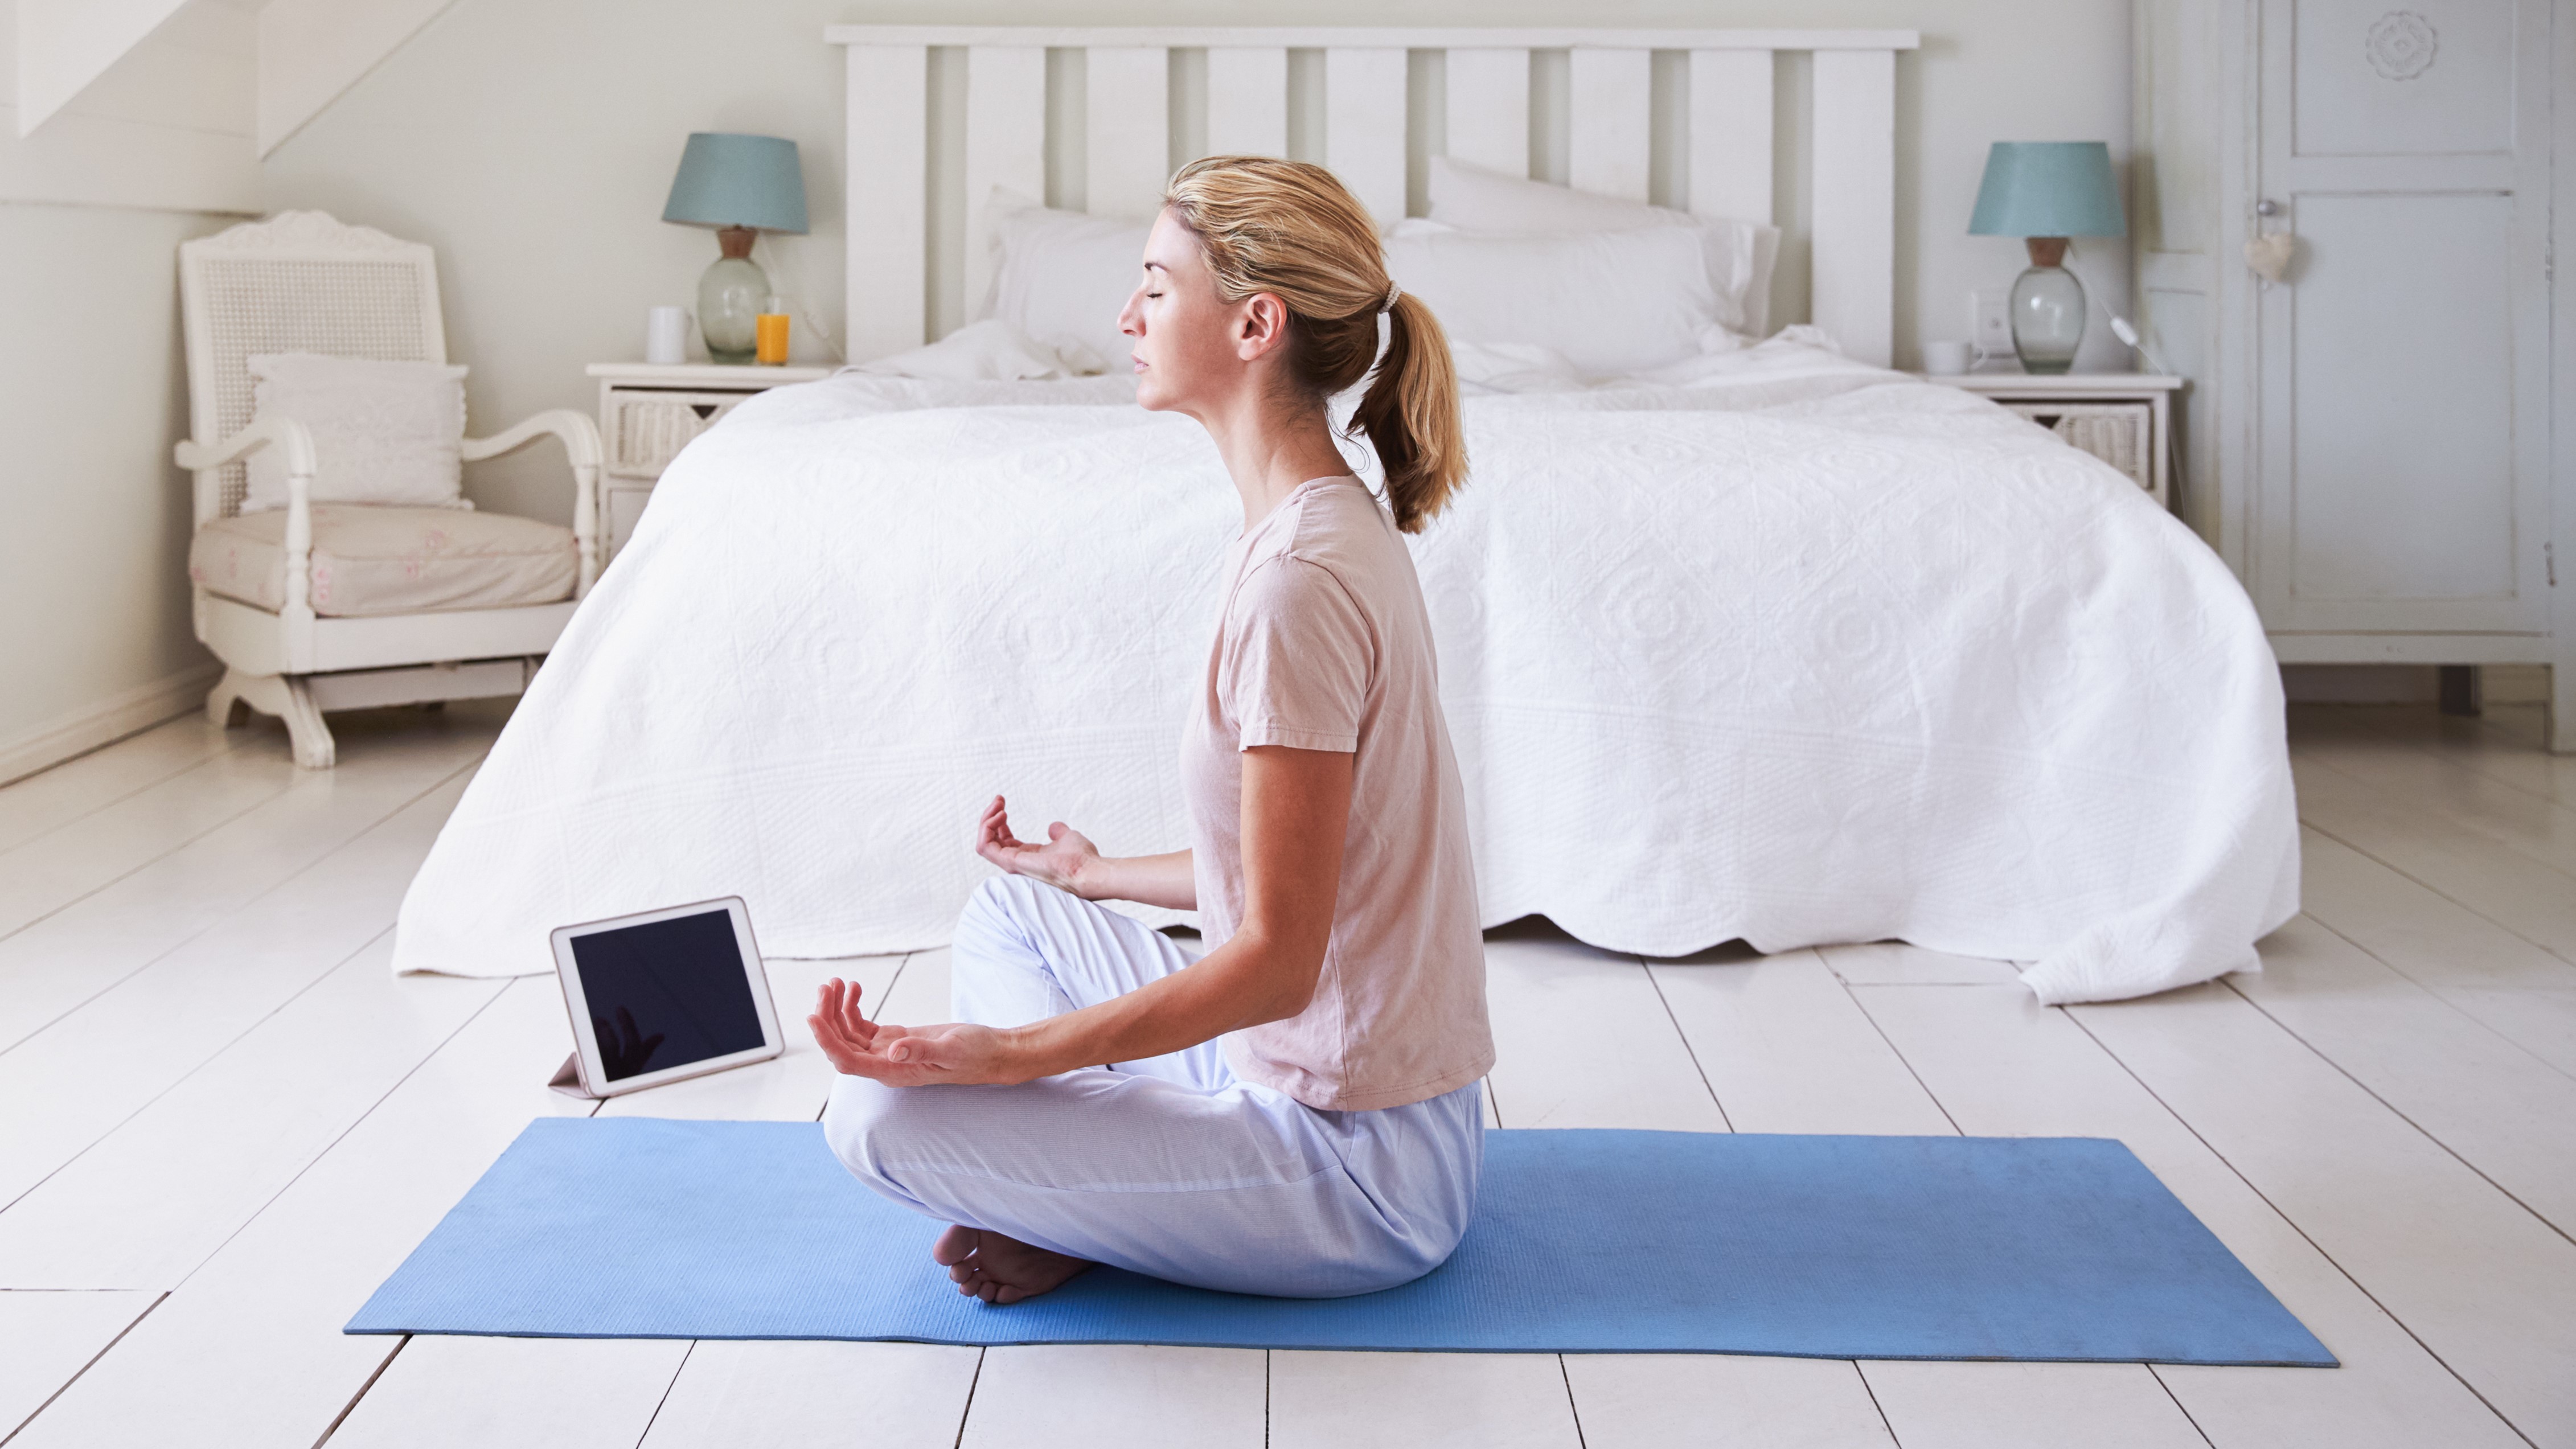 Женщина использует приложение для медитации, сидя на синем коврике для йоги перед своей белой кроватью.